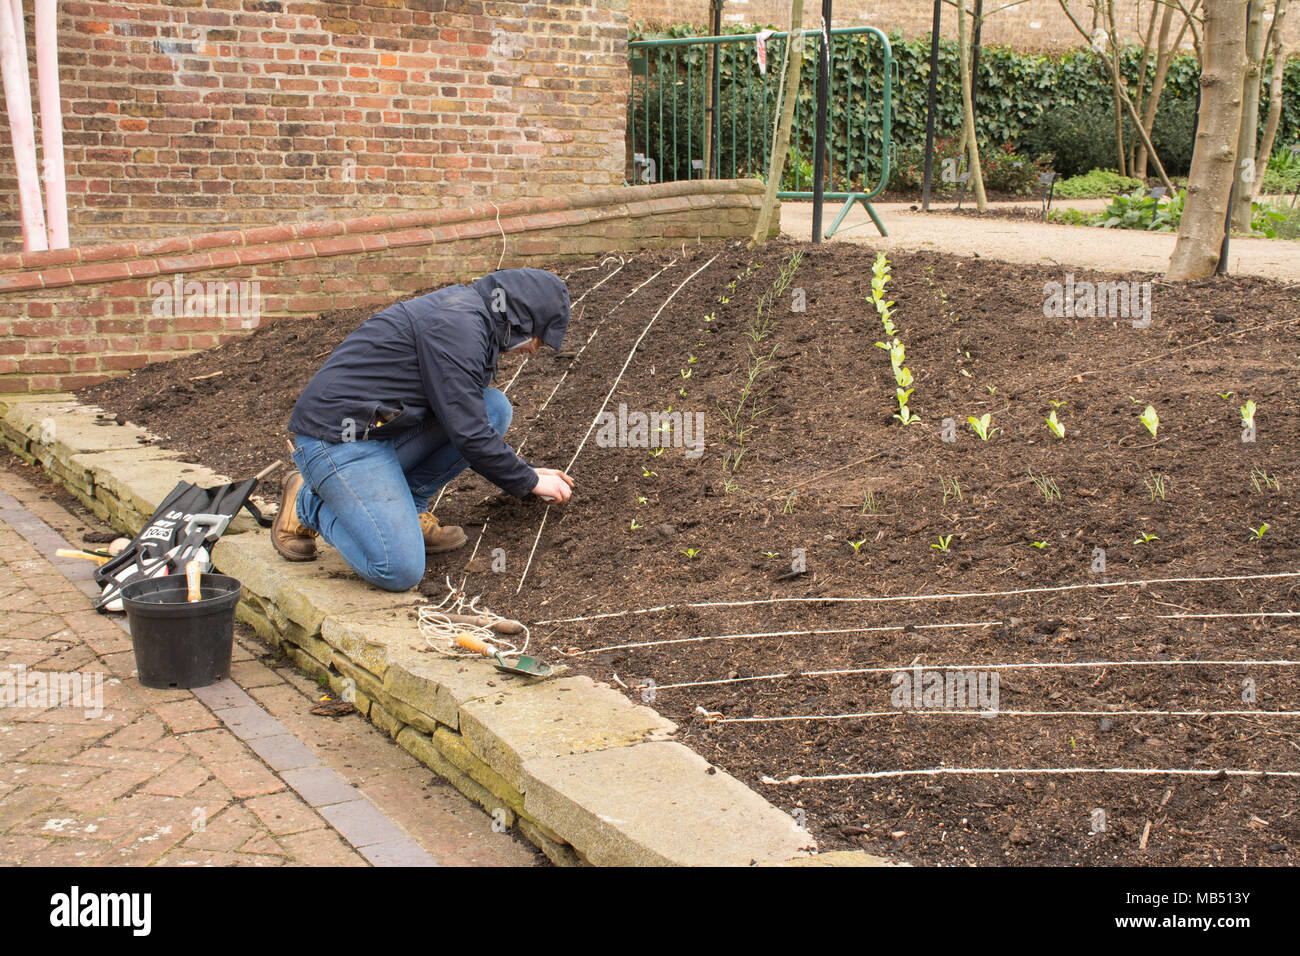 Gardener planting vegetable plants at Royal Botanic Gardens at Kew, London, UK Stock Photo